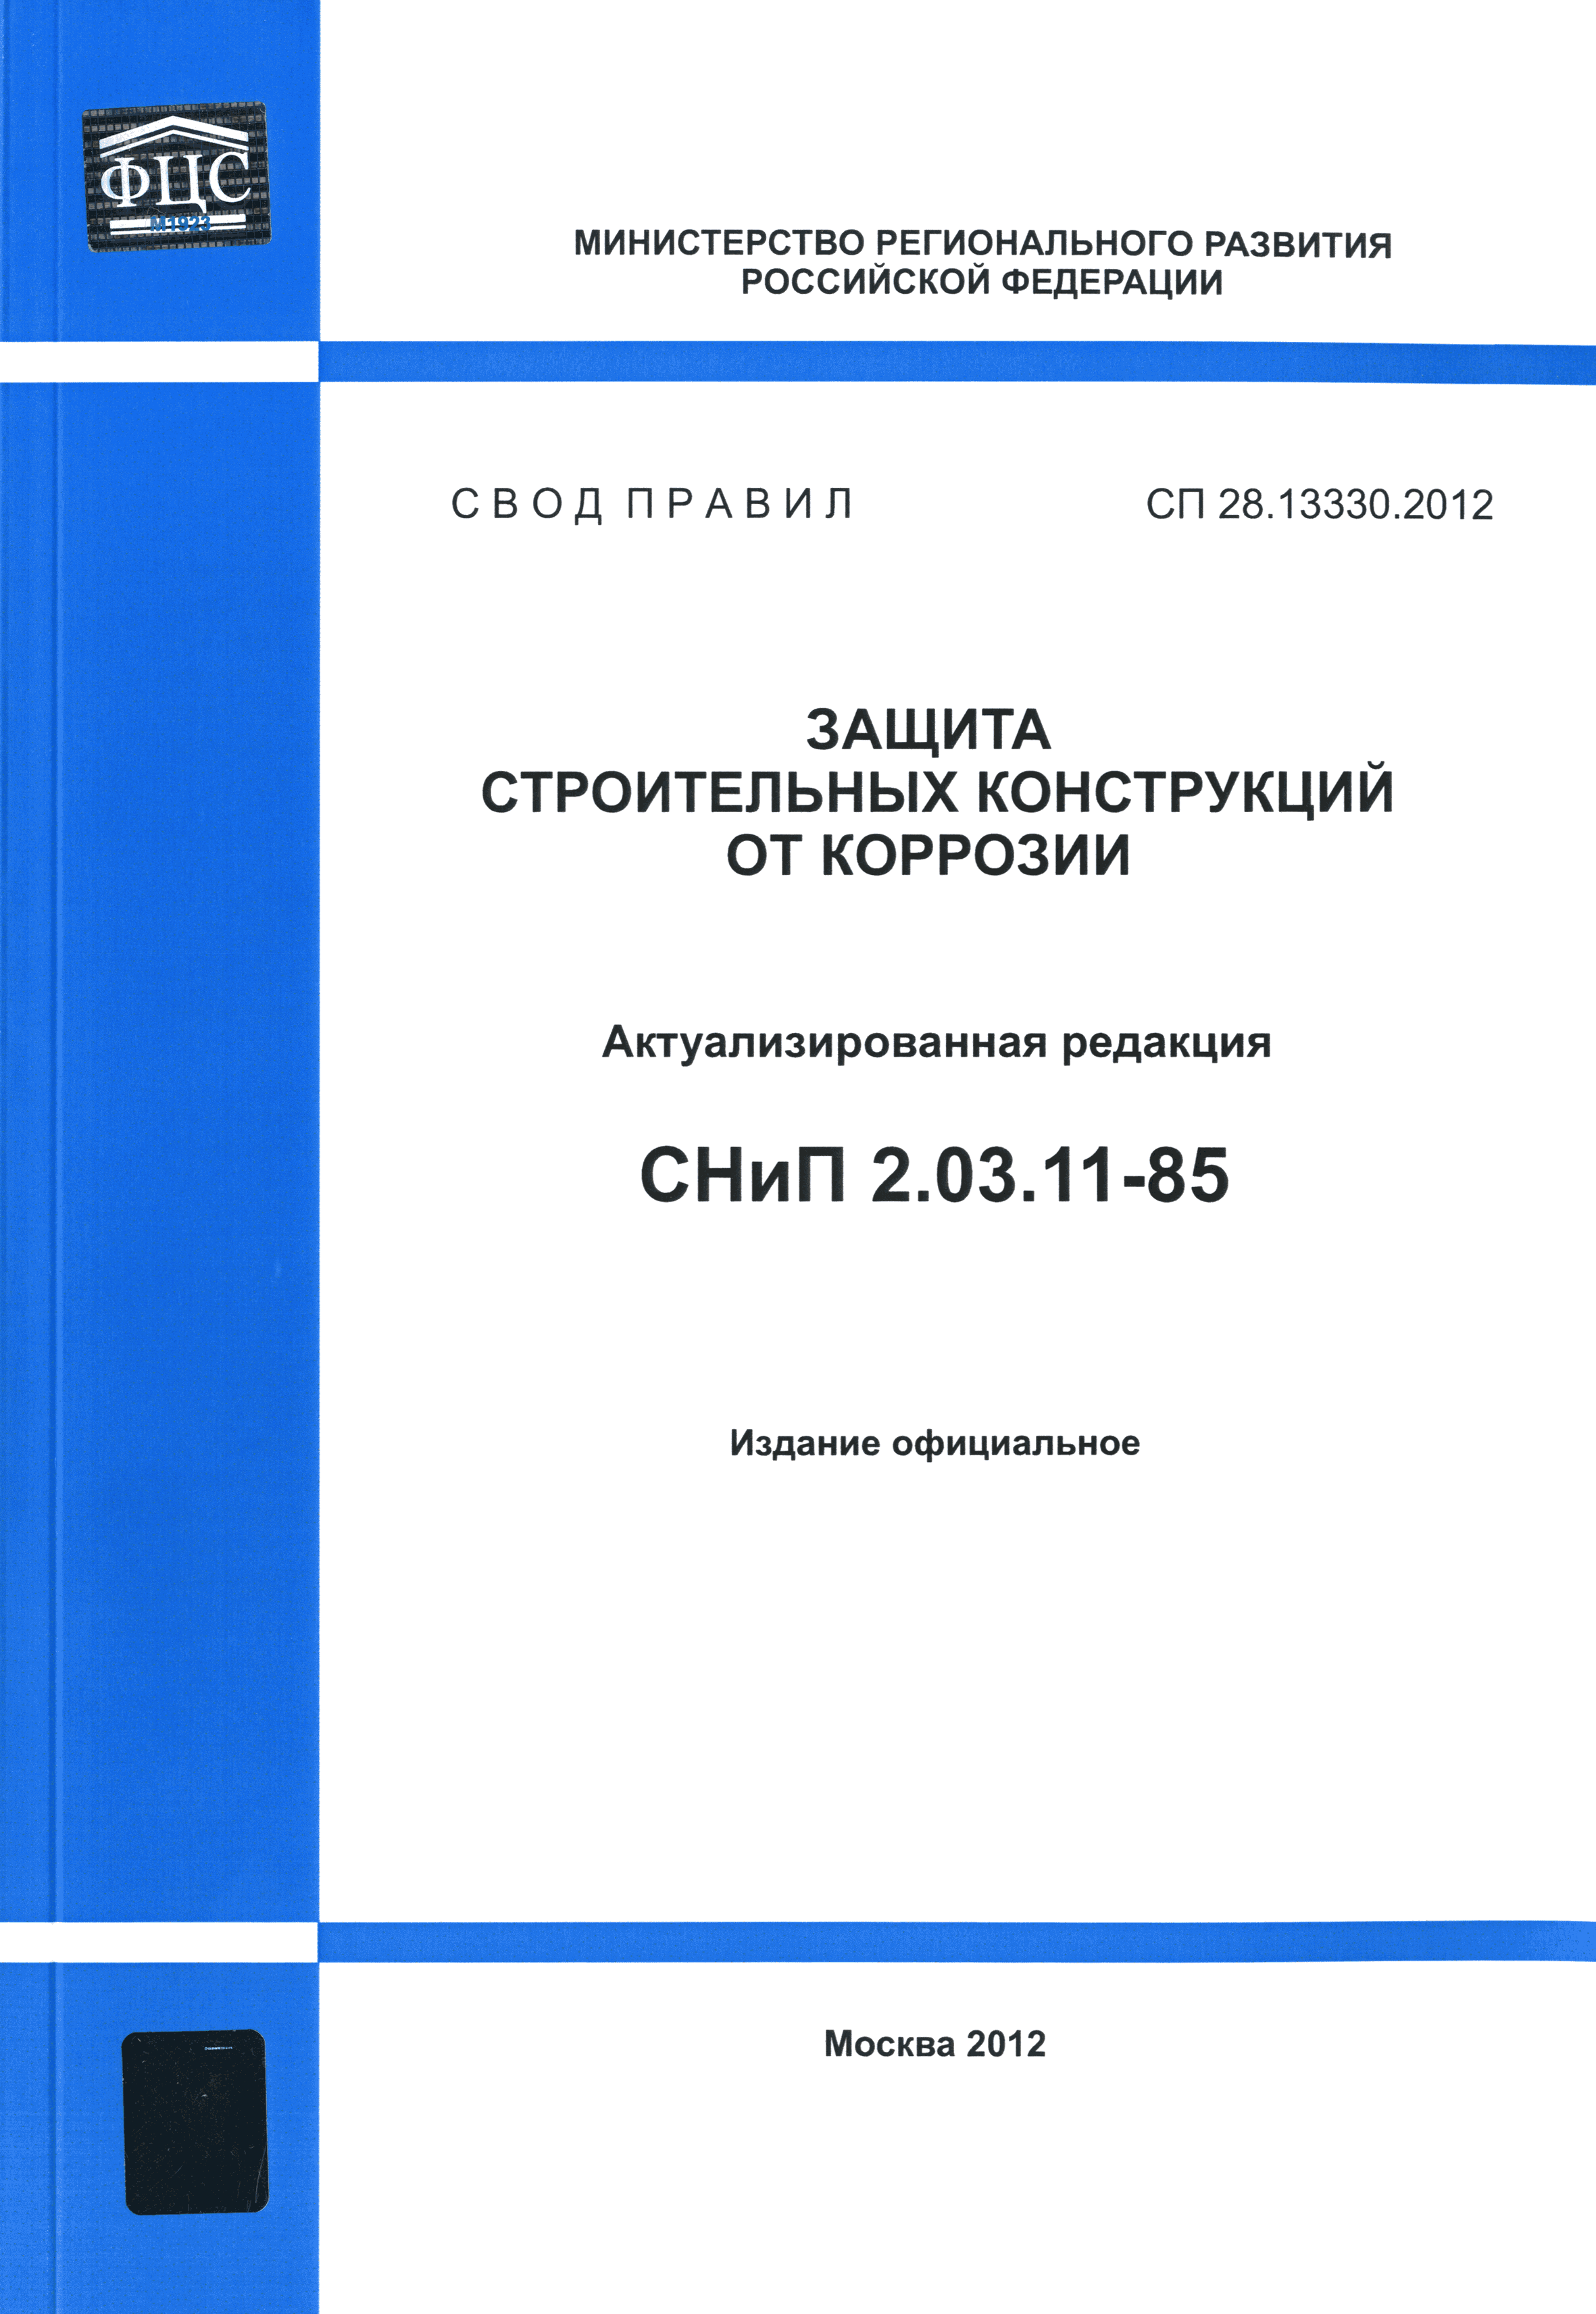 СП 28.13330.2012